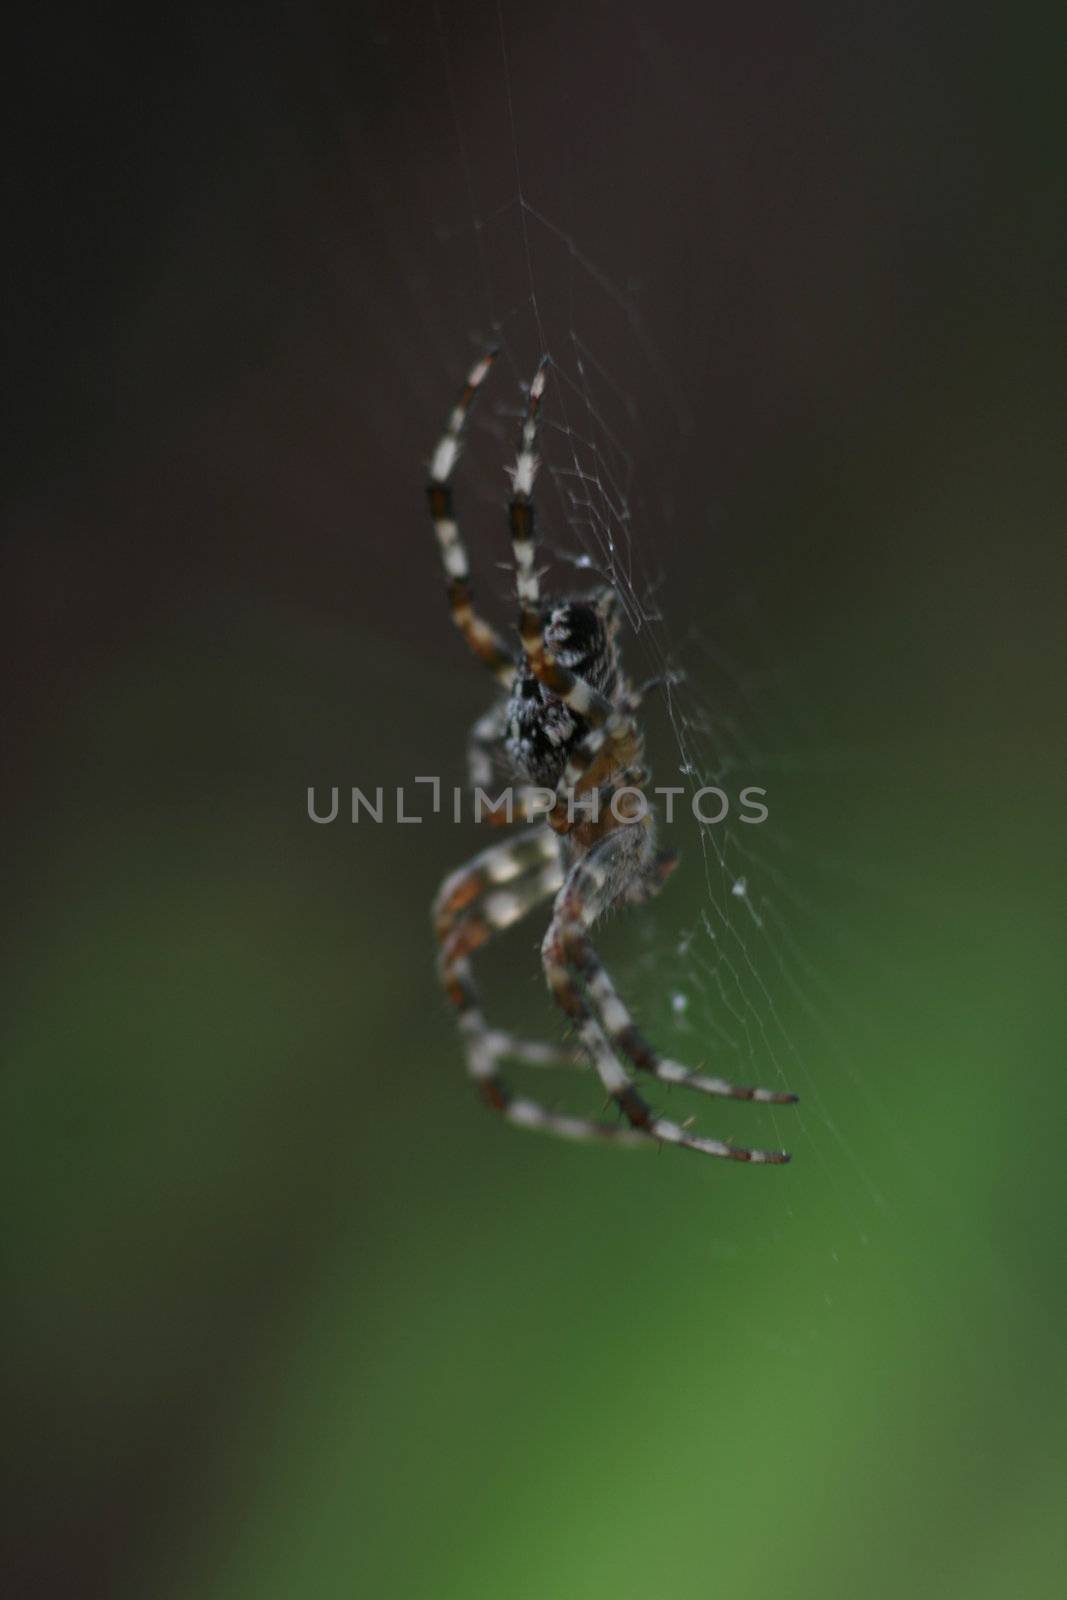 Garden spider by koep